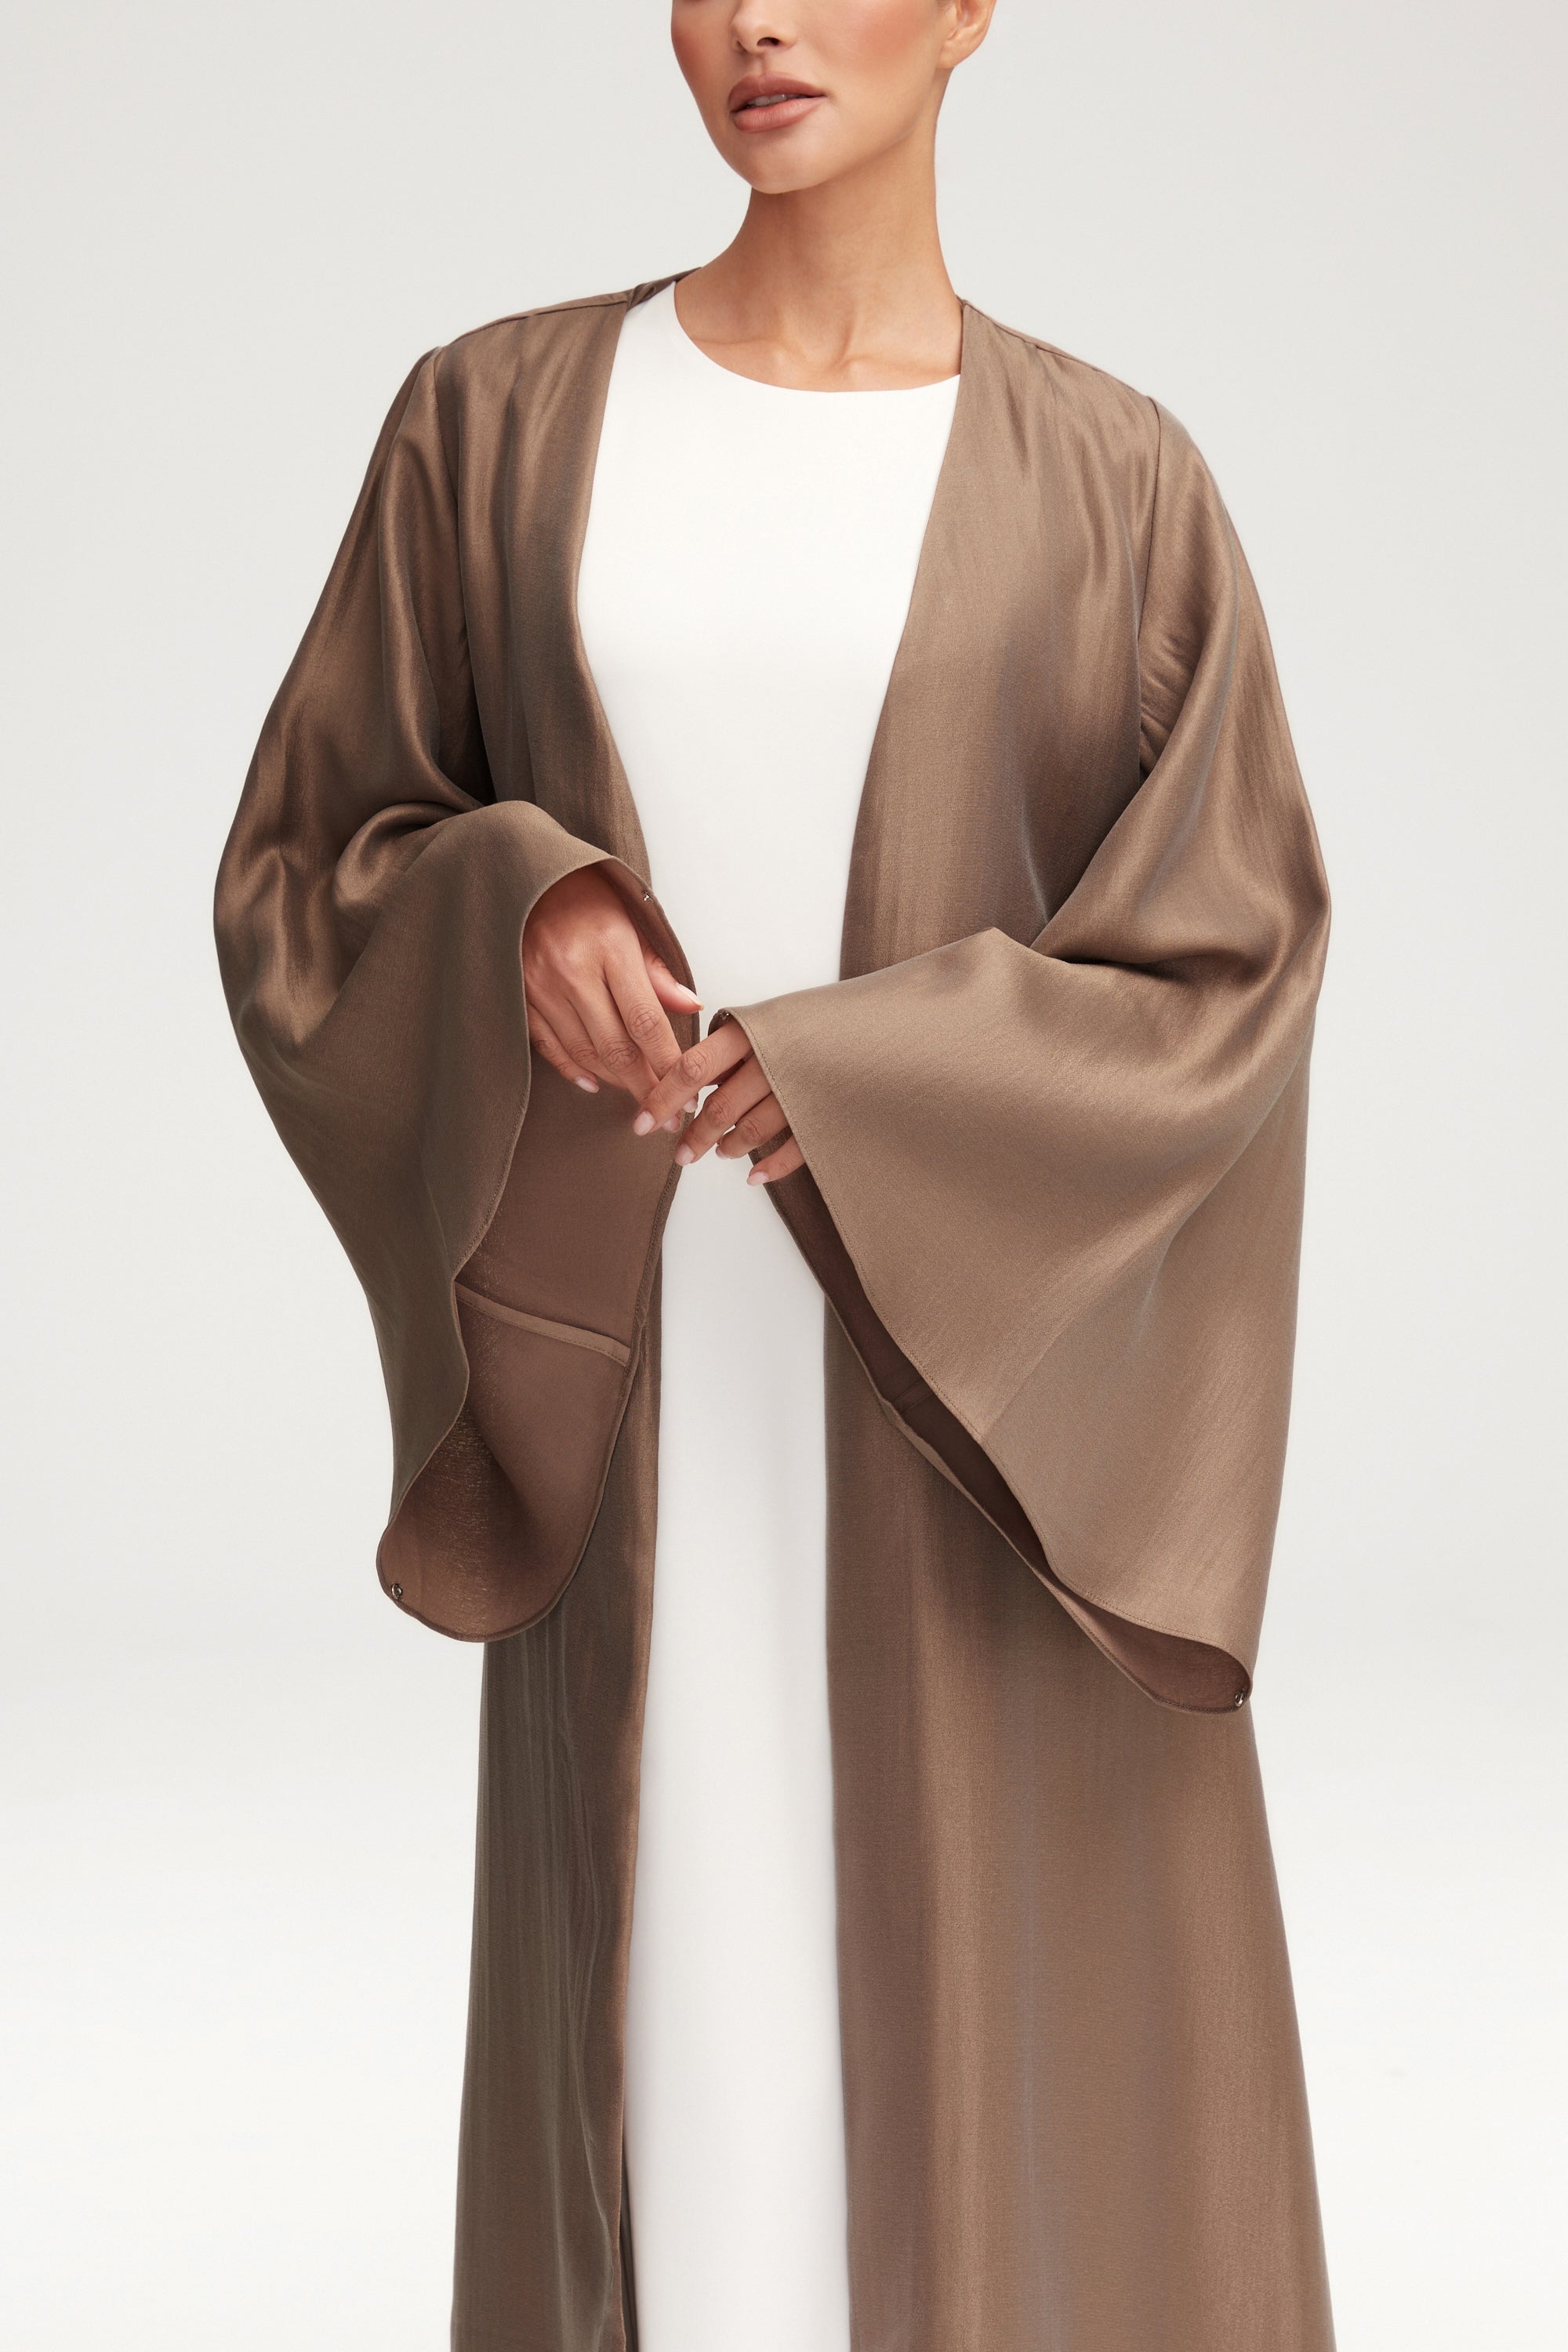 Seema Flare Sleeve Open Abaya - Taupe Clothing Veiled 